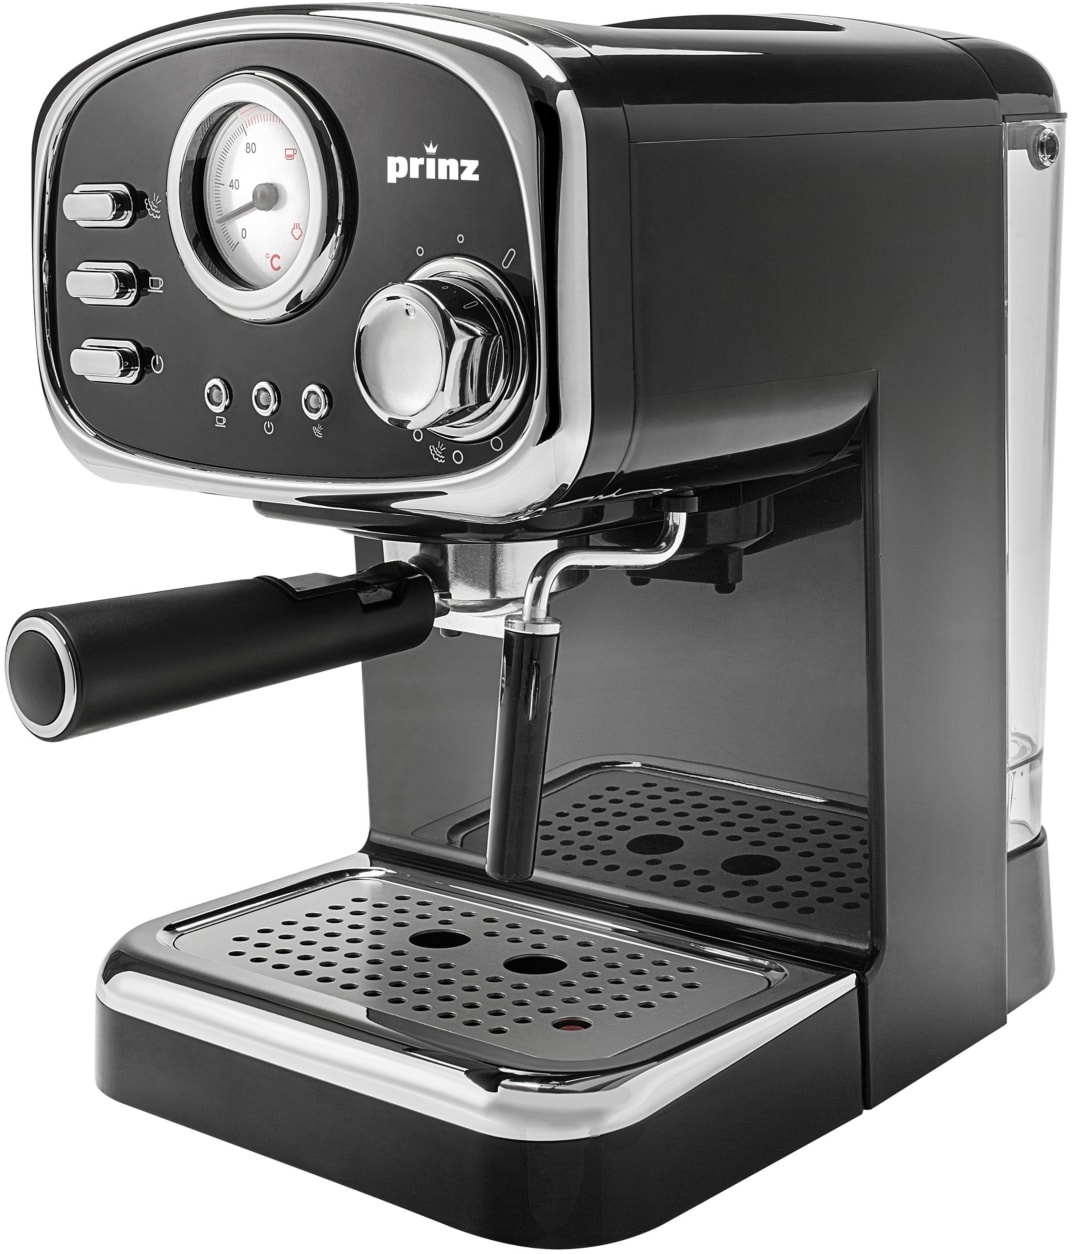 prinz Espressomaschine PZ-EM1 im Retrodesign